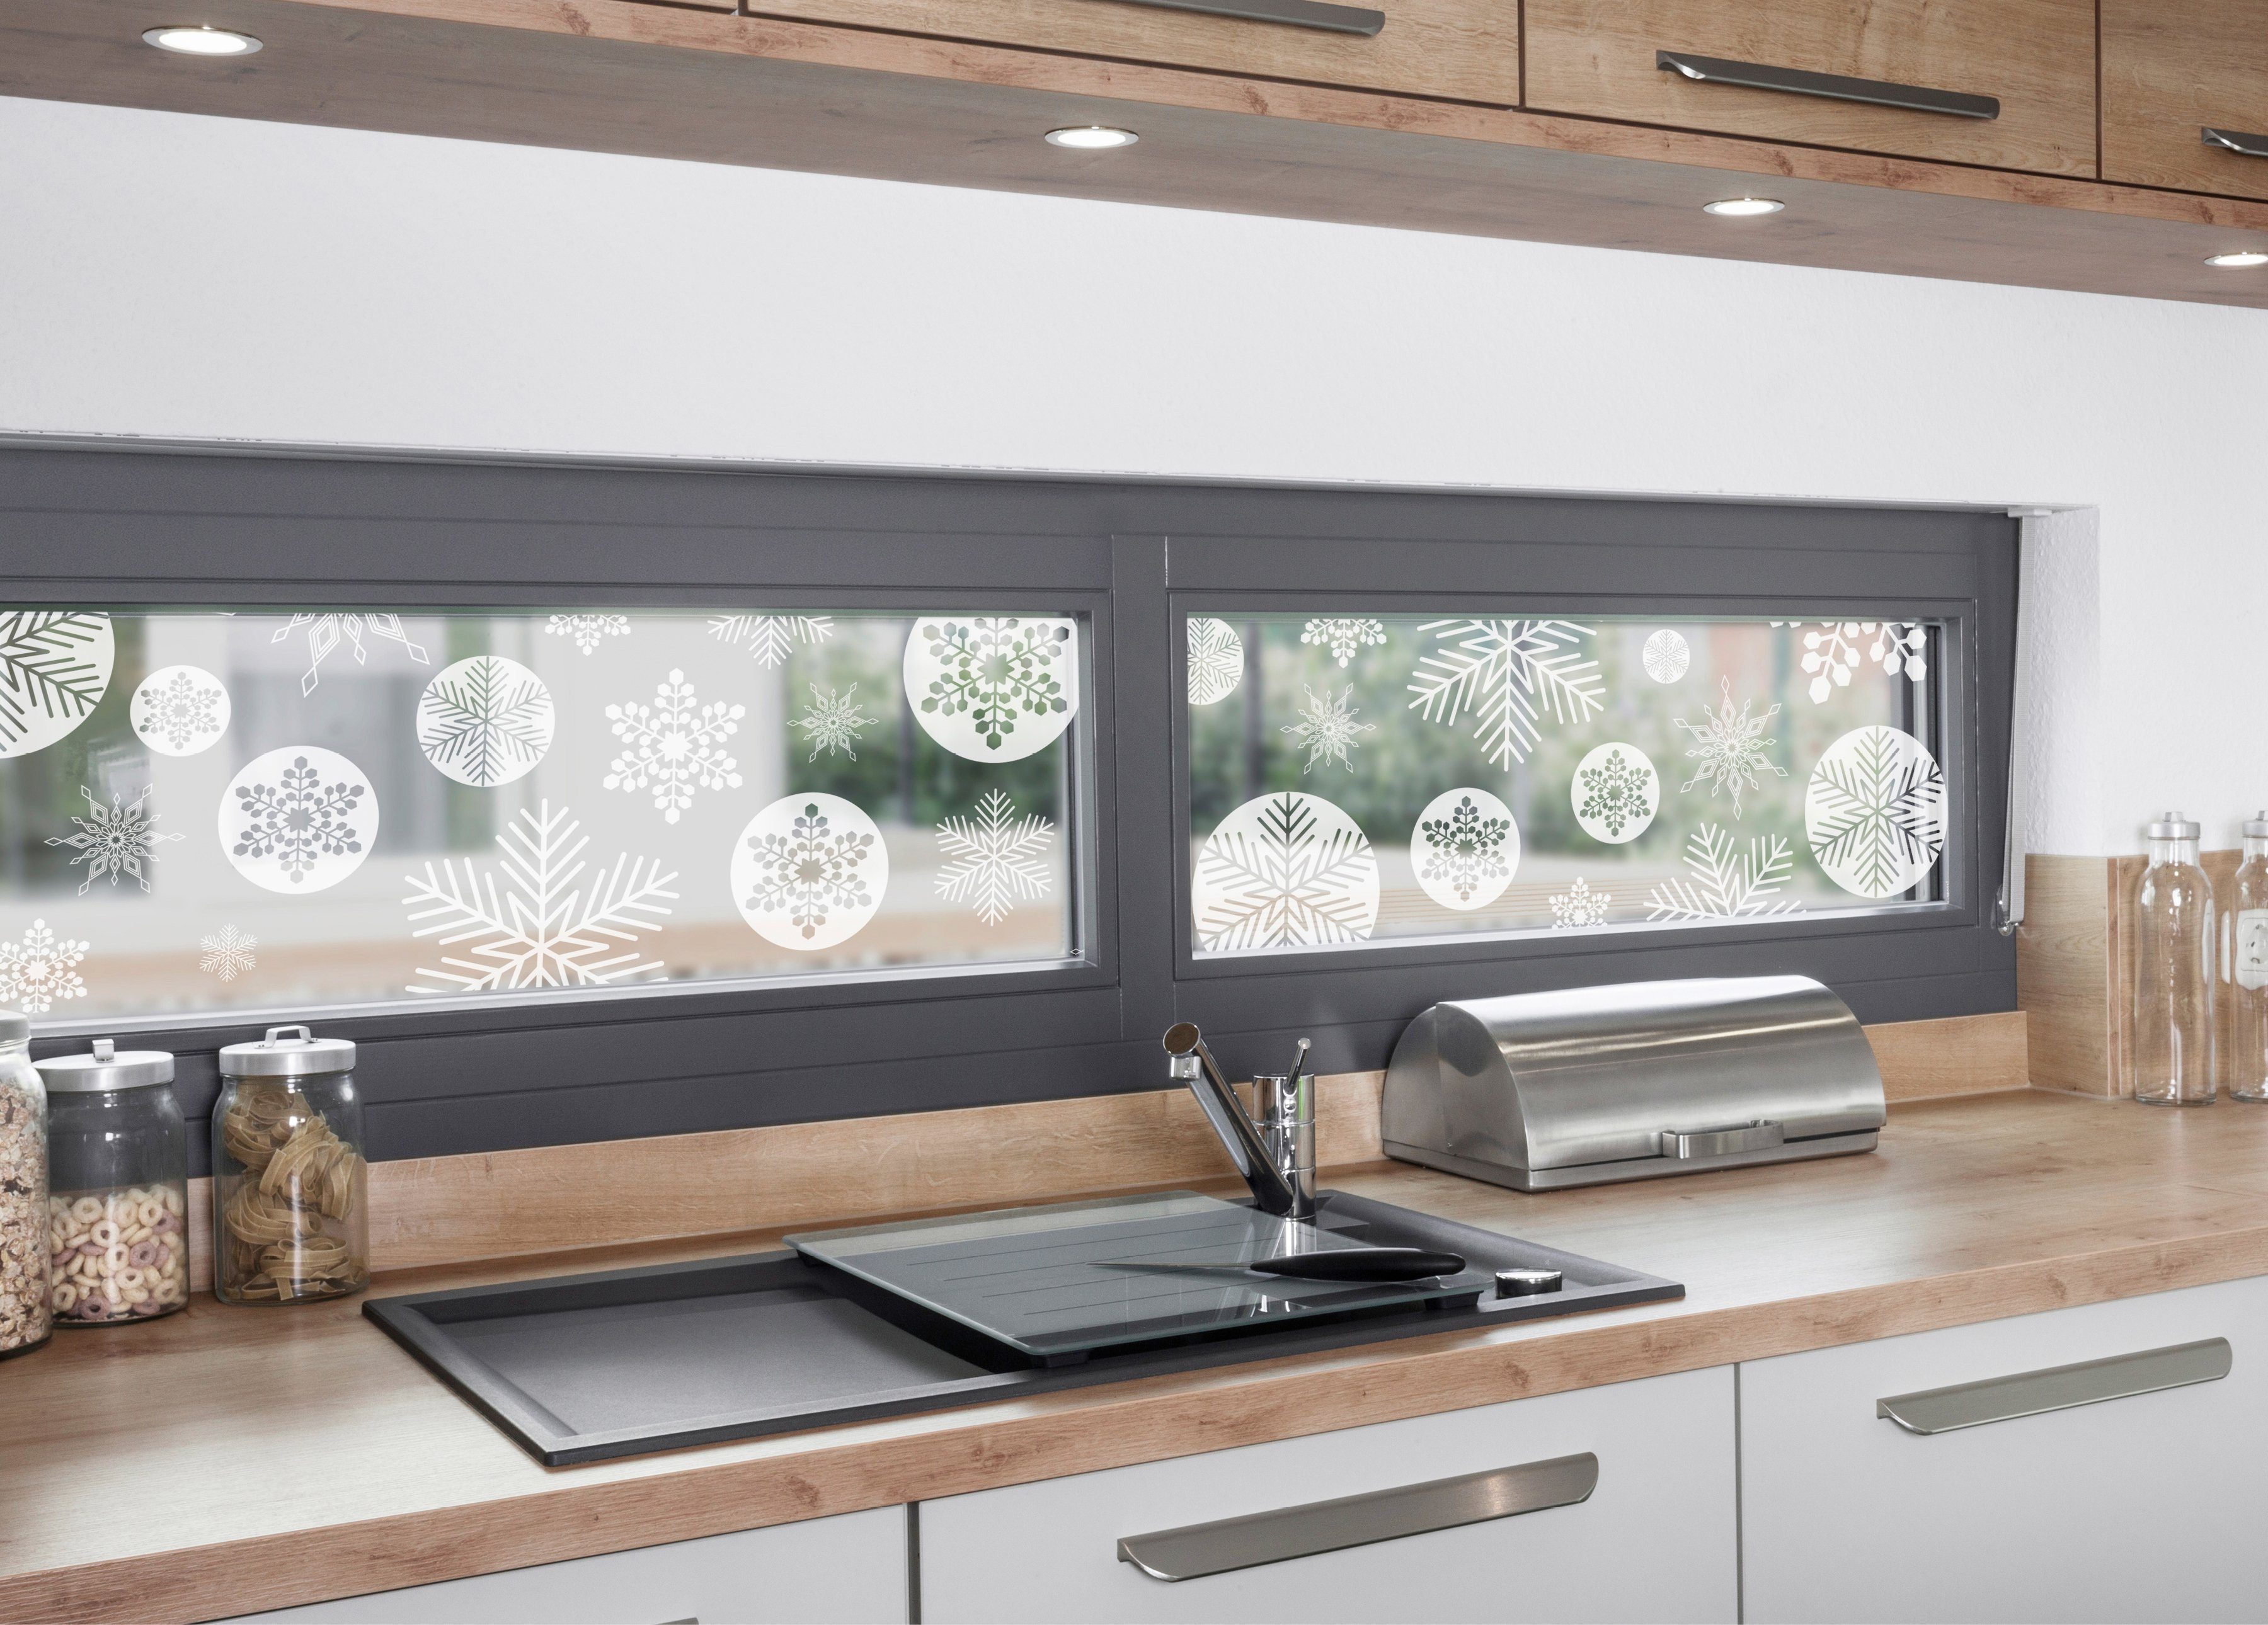 Fensterfolie Look Snowy 30 MySpotti, white, halbtransparent, cm, 200 glatt, x statisch haftend